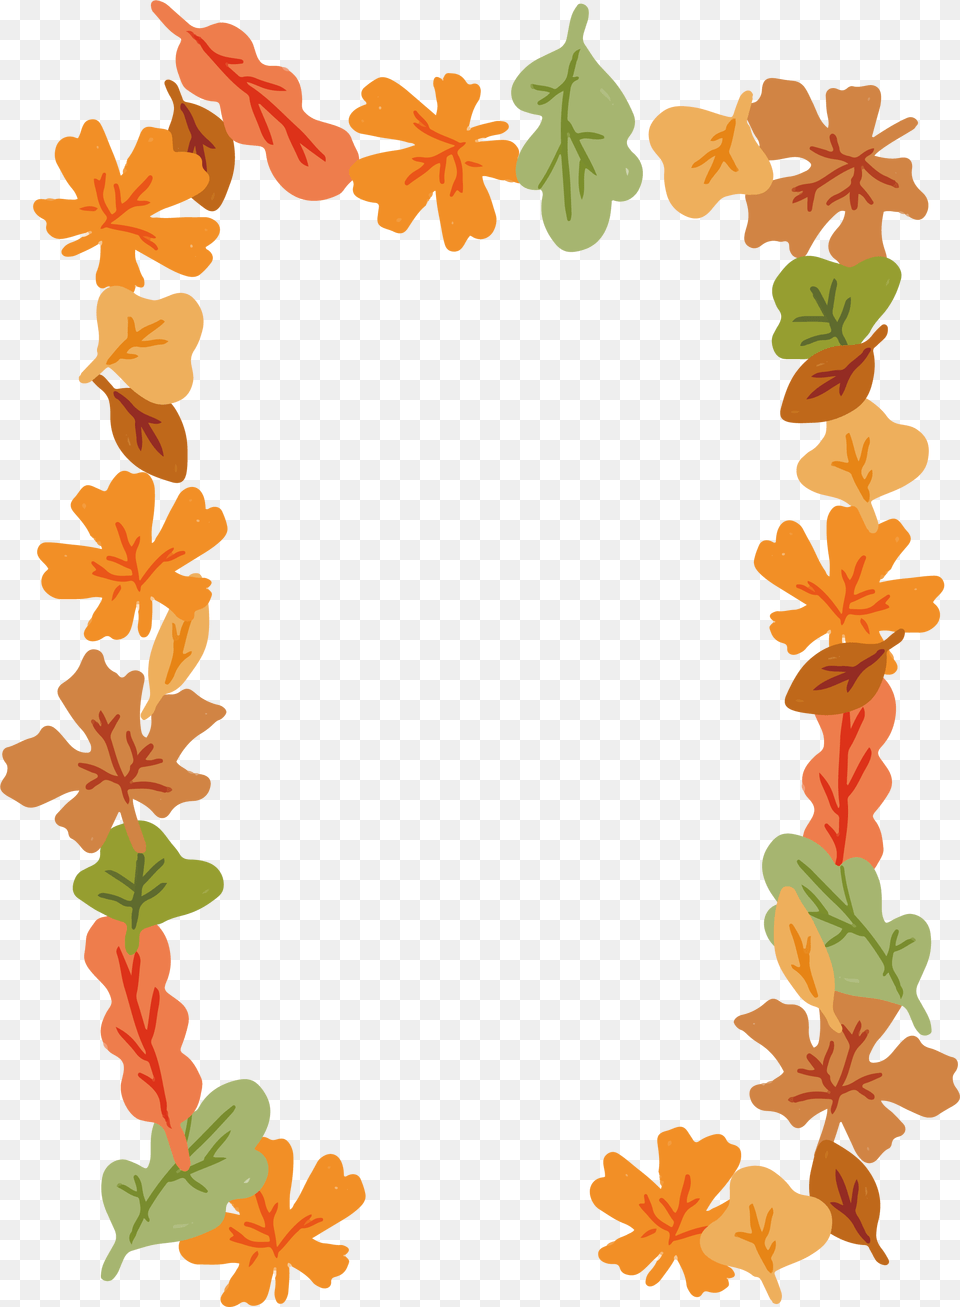 Falling Vector Leaves Fall Leaves Frame, Plant, Leaf, Flower, Flower Arrangement Png